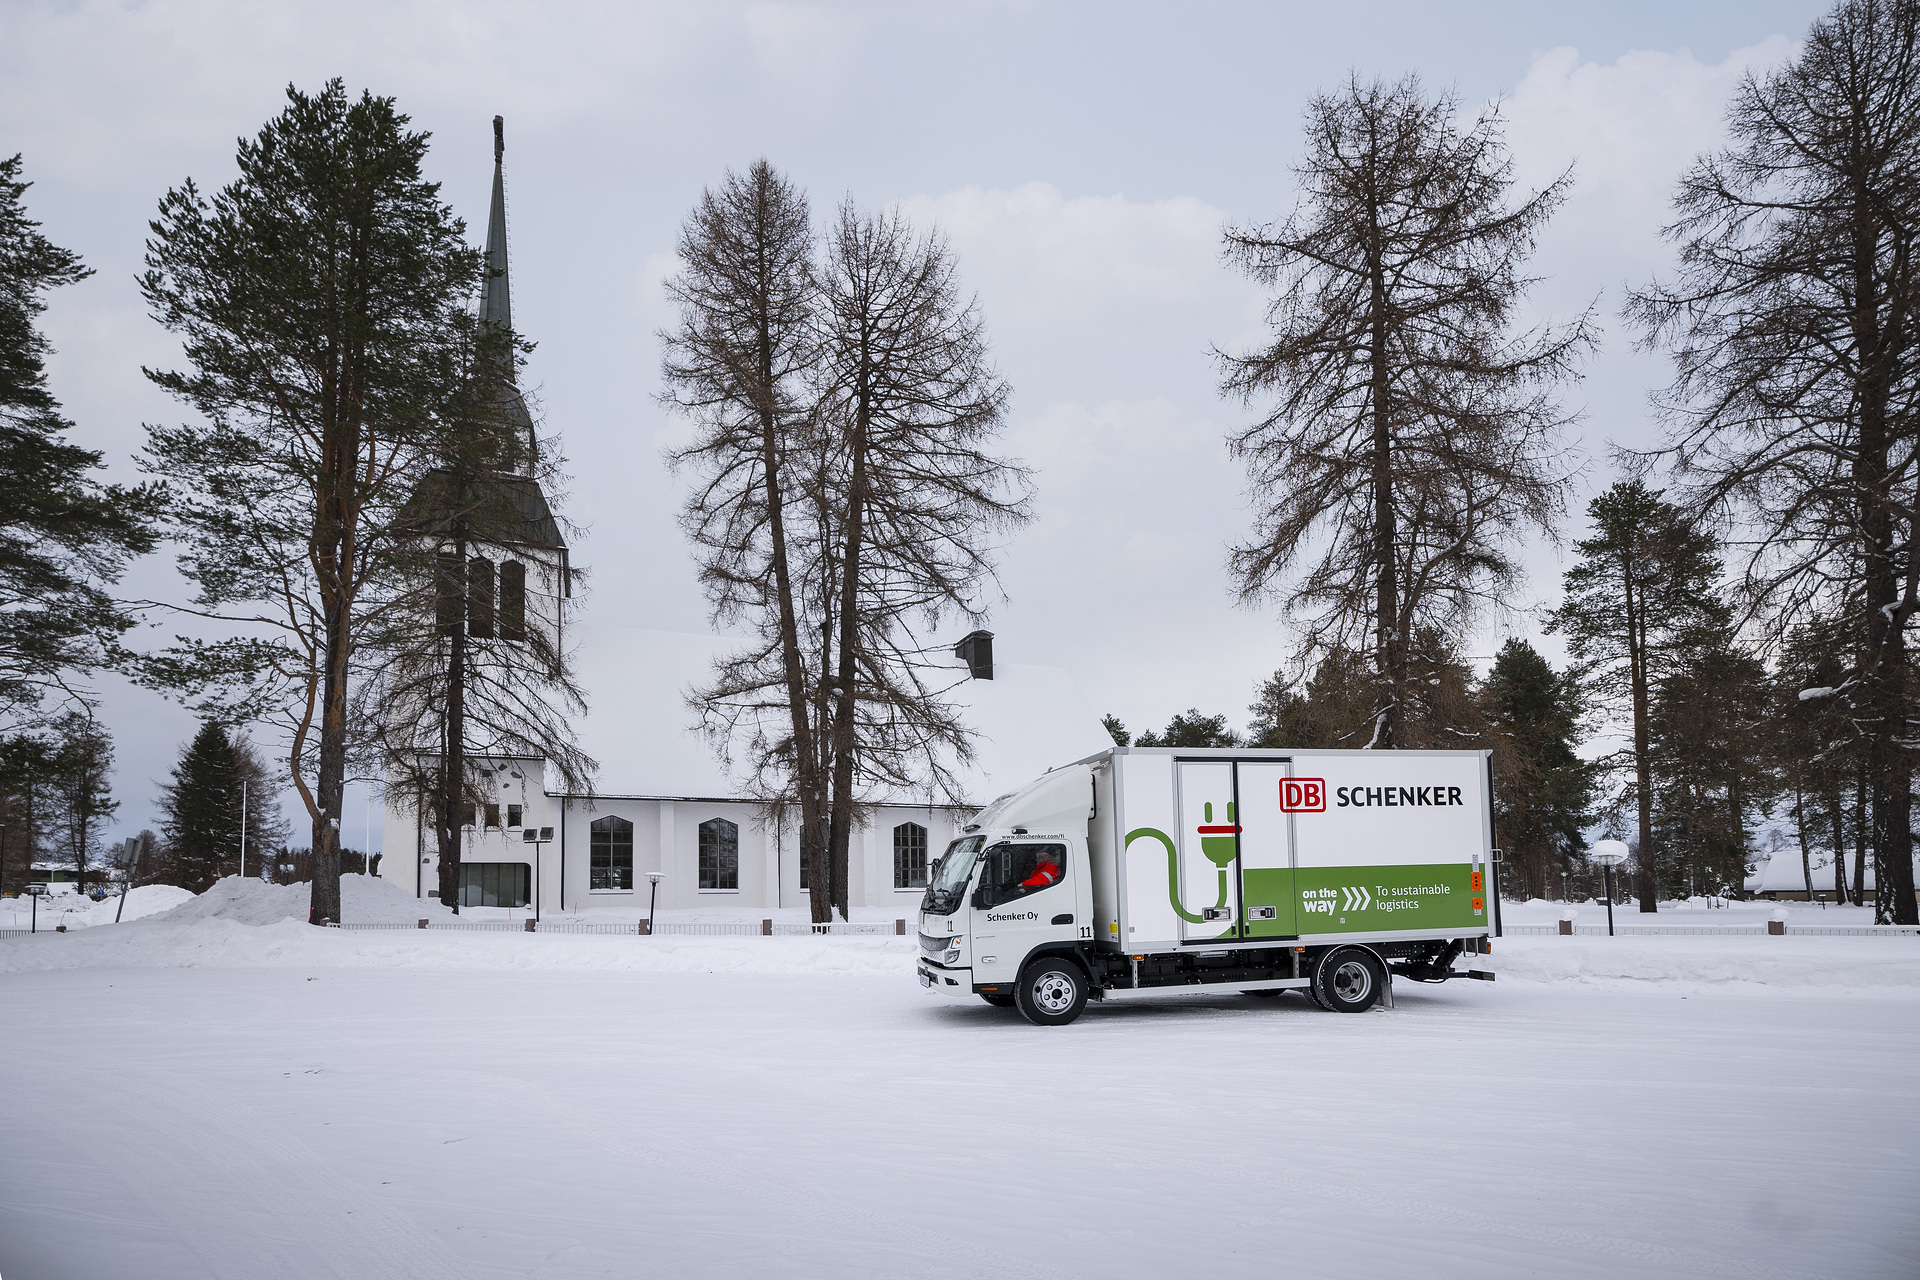 Eiskalt im Norden Finnlands: FUSO eCanter bei DB SCHENKER als einer von Daimler Trucks weltweit nördlichsten Elektro-Lkw im Einsatz